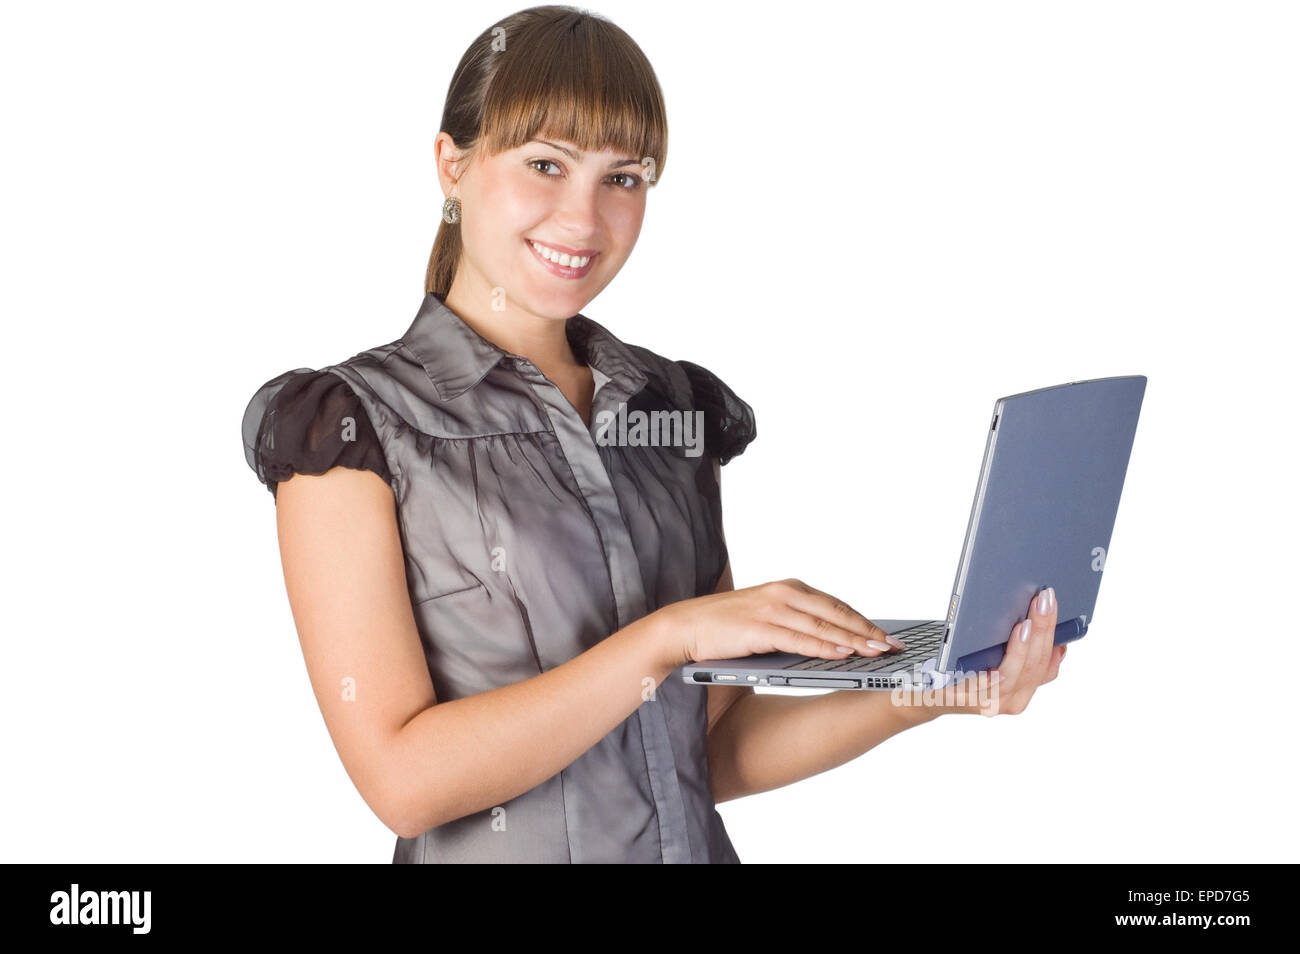 Immagine del giovane bella ragazza con il computer portatile isolato su bianco Foto Stock